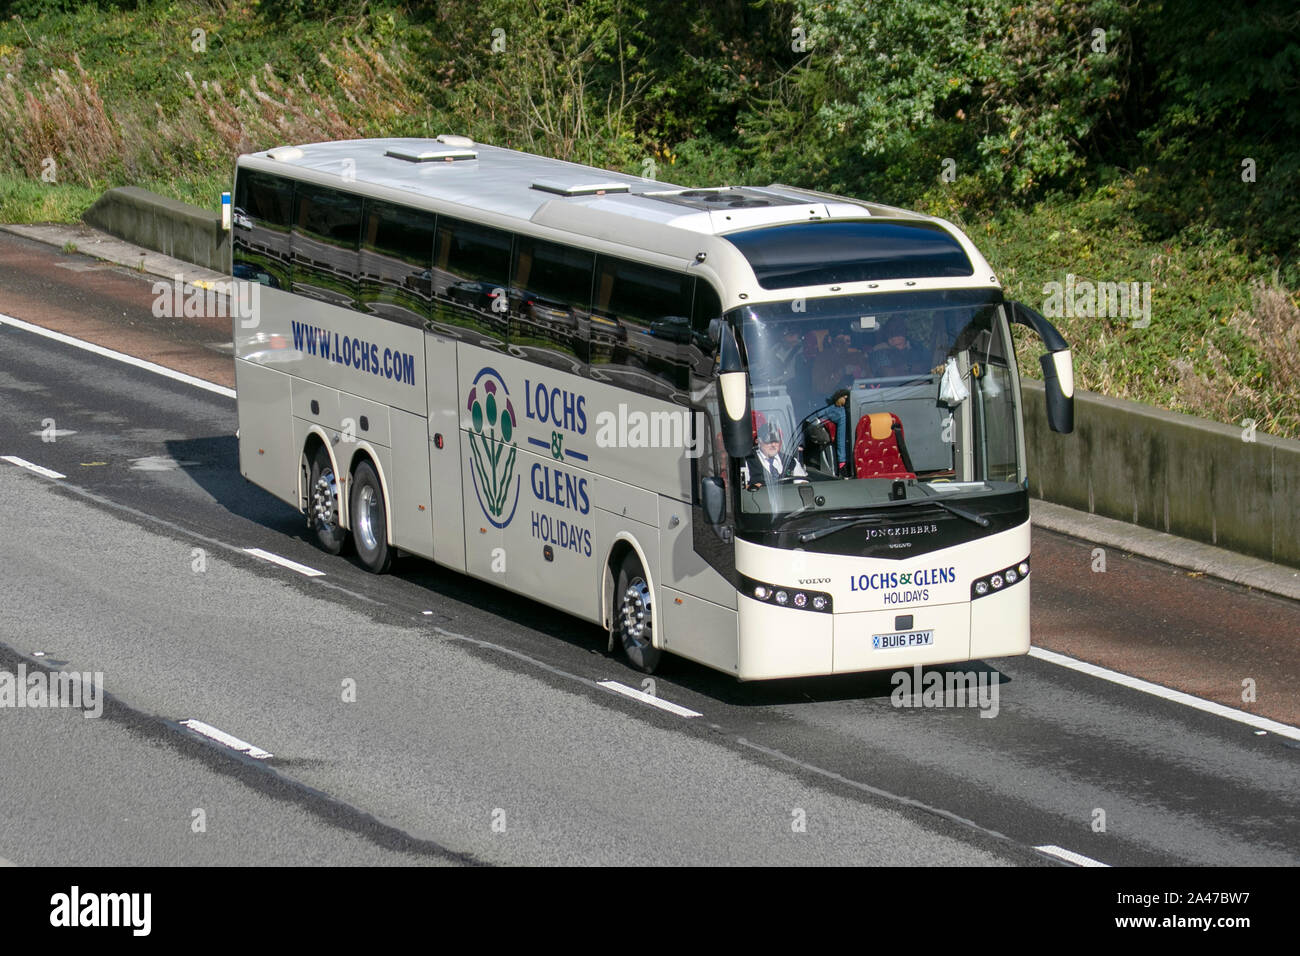 Lochs & Glens autobus; UK Autobus traffico veicolare, trasporti, moderno, bus sud-legato sulla corsia di 3 M6 motorway autostrada. Foto Stock